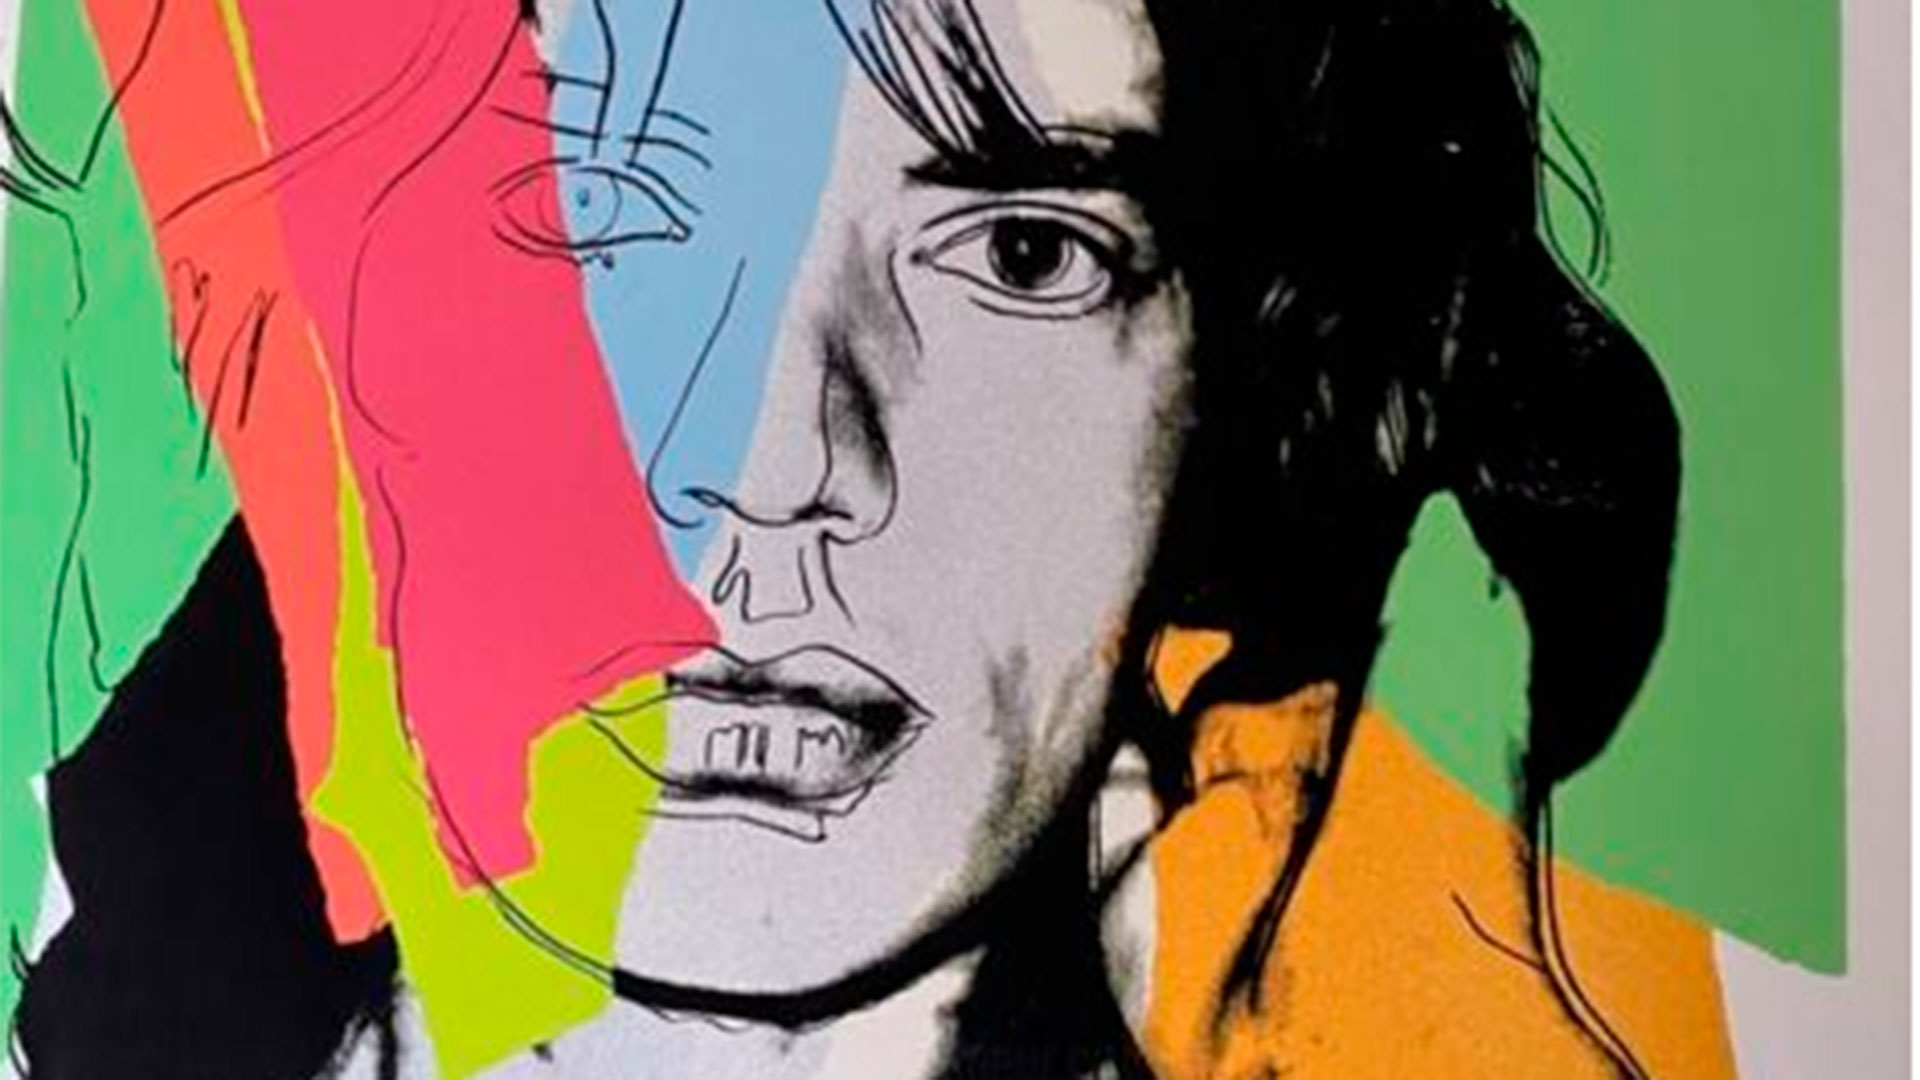 Sale a subasta una serigrafía de Warhol que rinde homenaje a Mick Jagger 